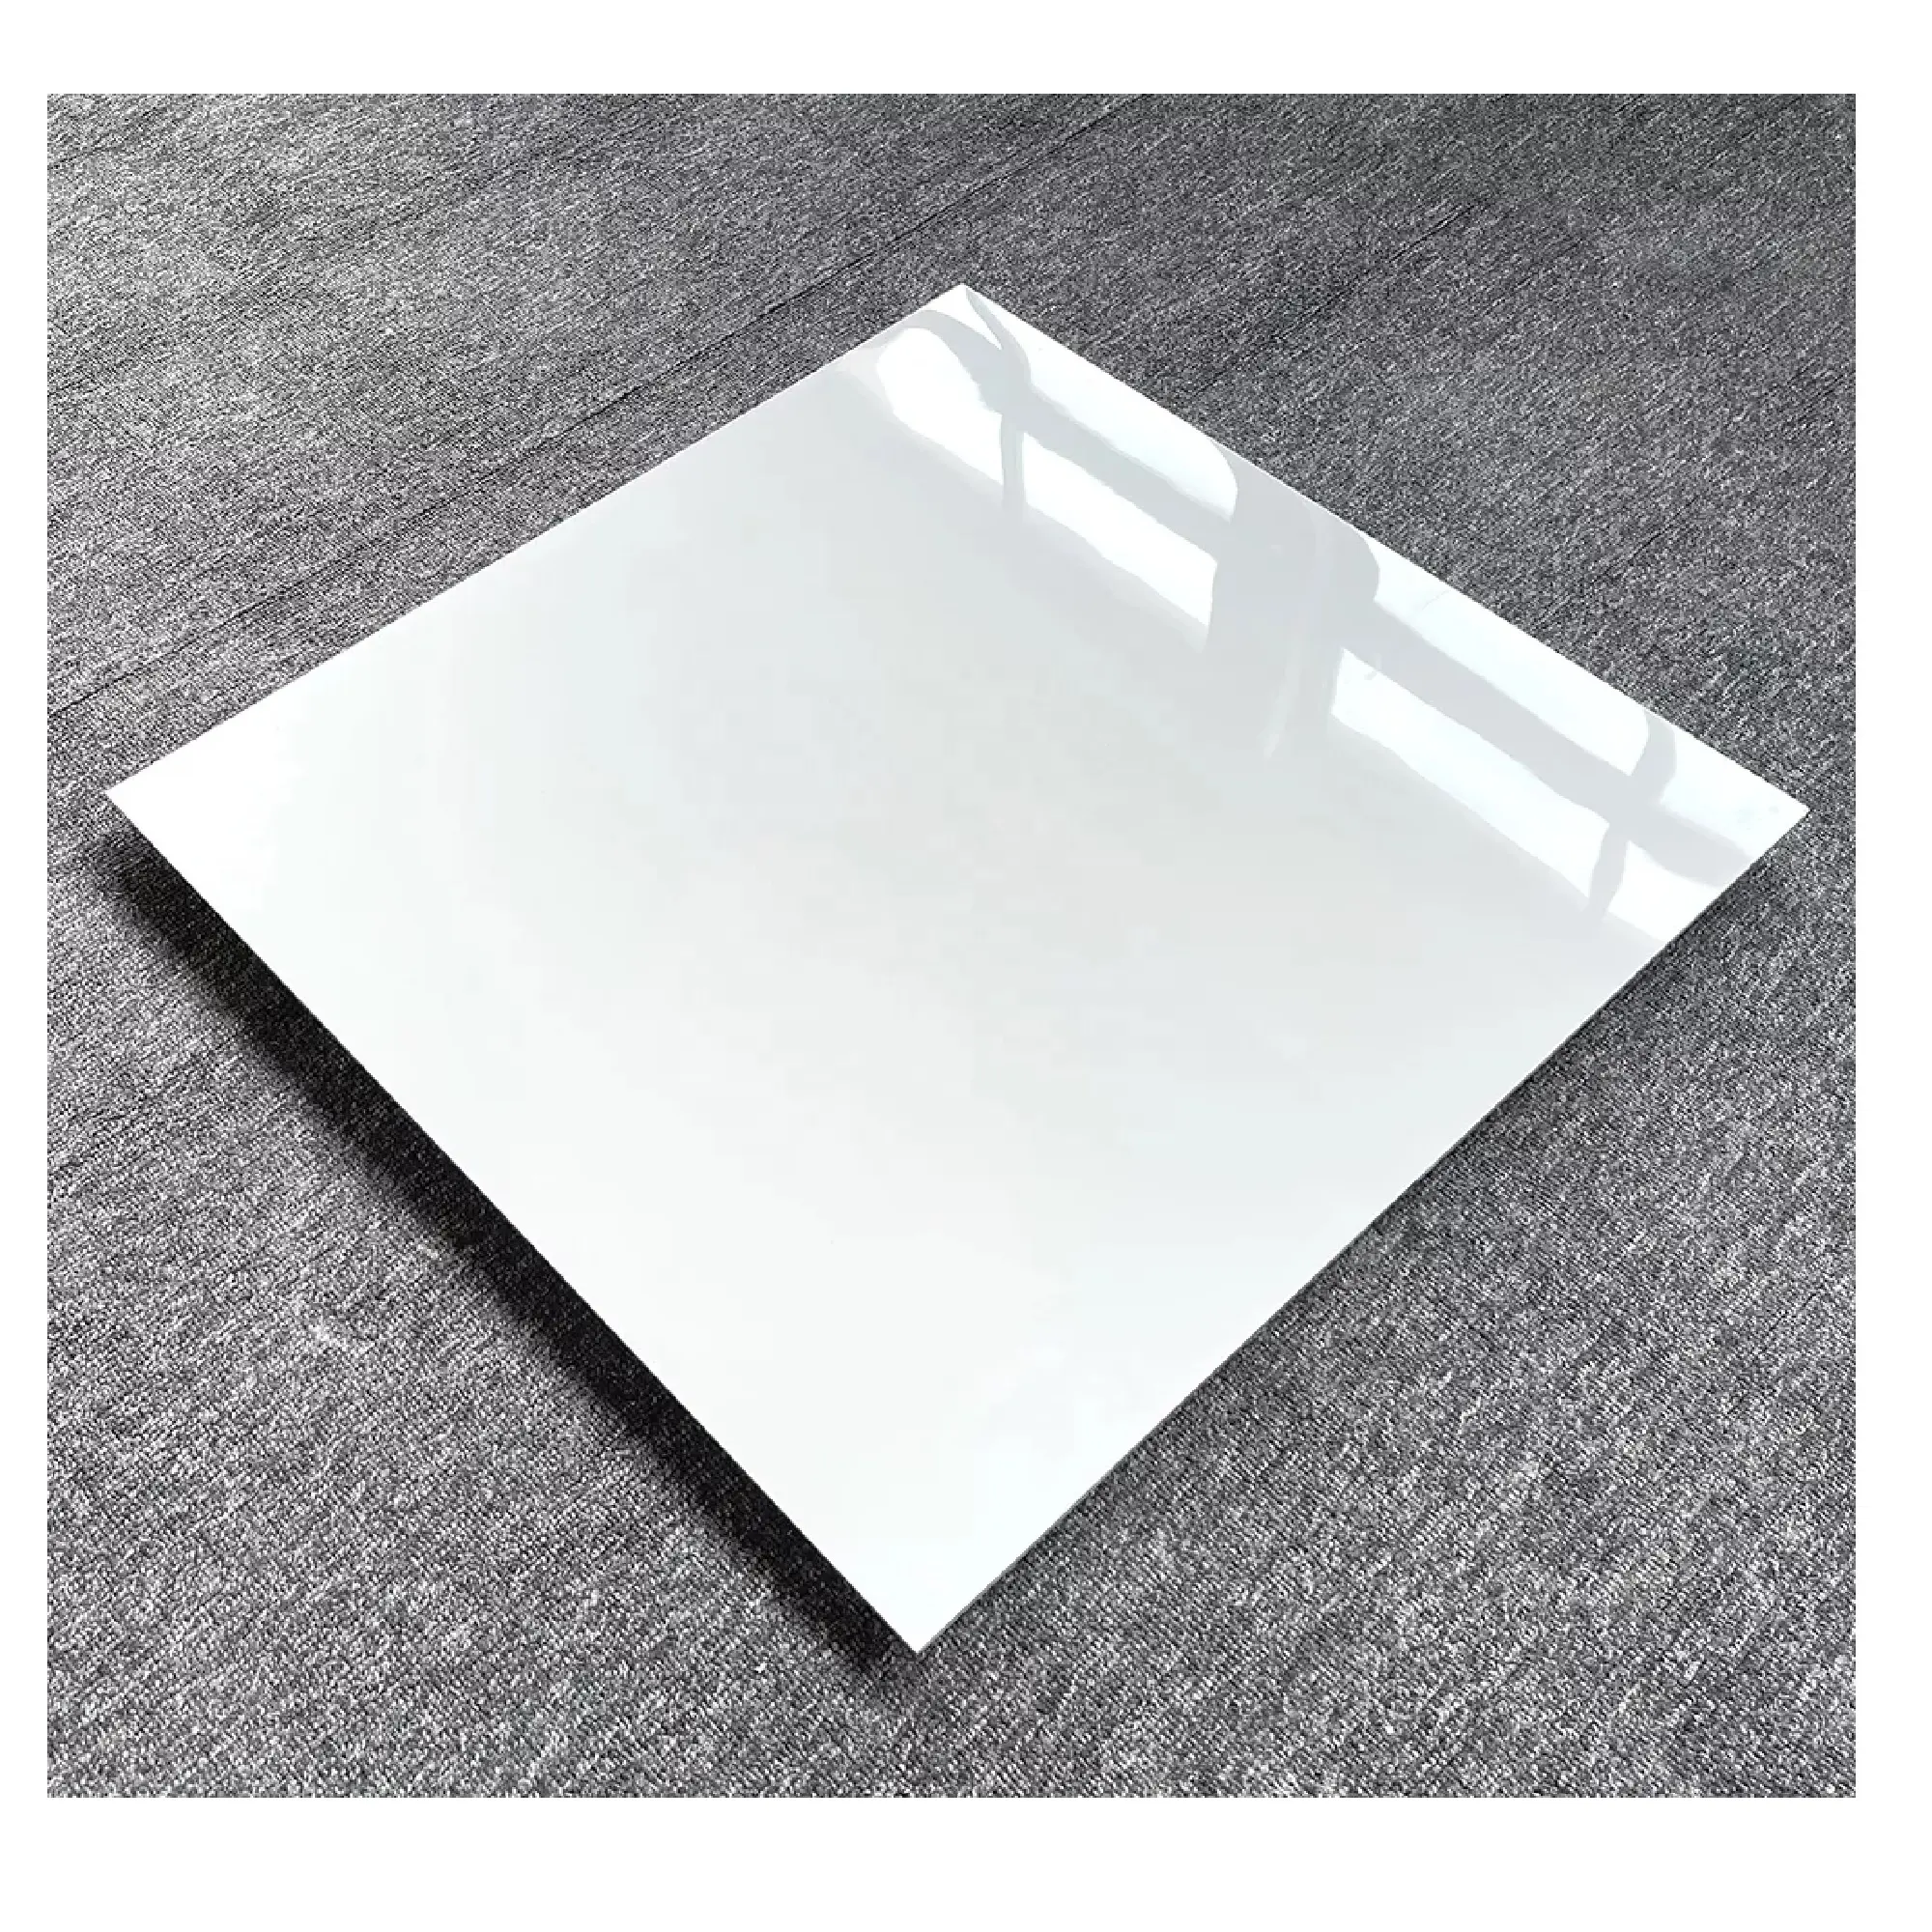 World Wave Super White Porcelain Tiles 60*120cm Marble Ceramic Tiles 600*120mm From India Morbi White Porcelain Best Design